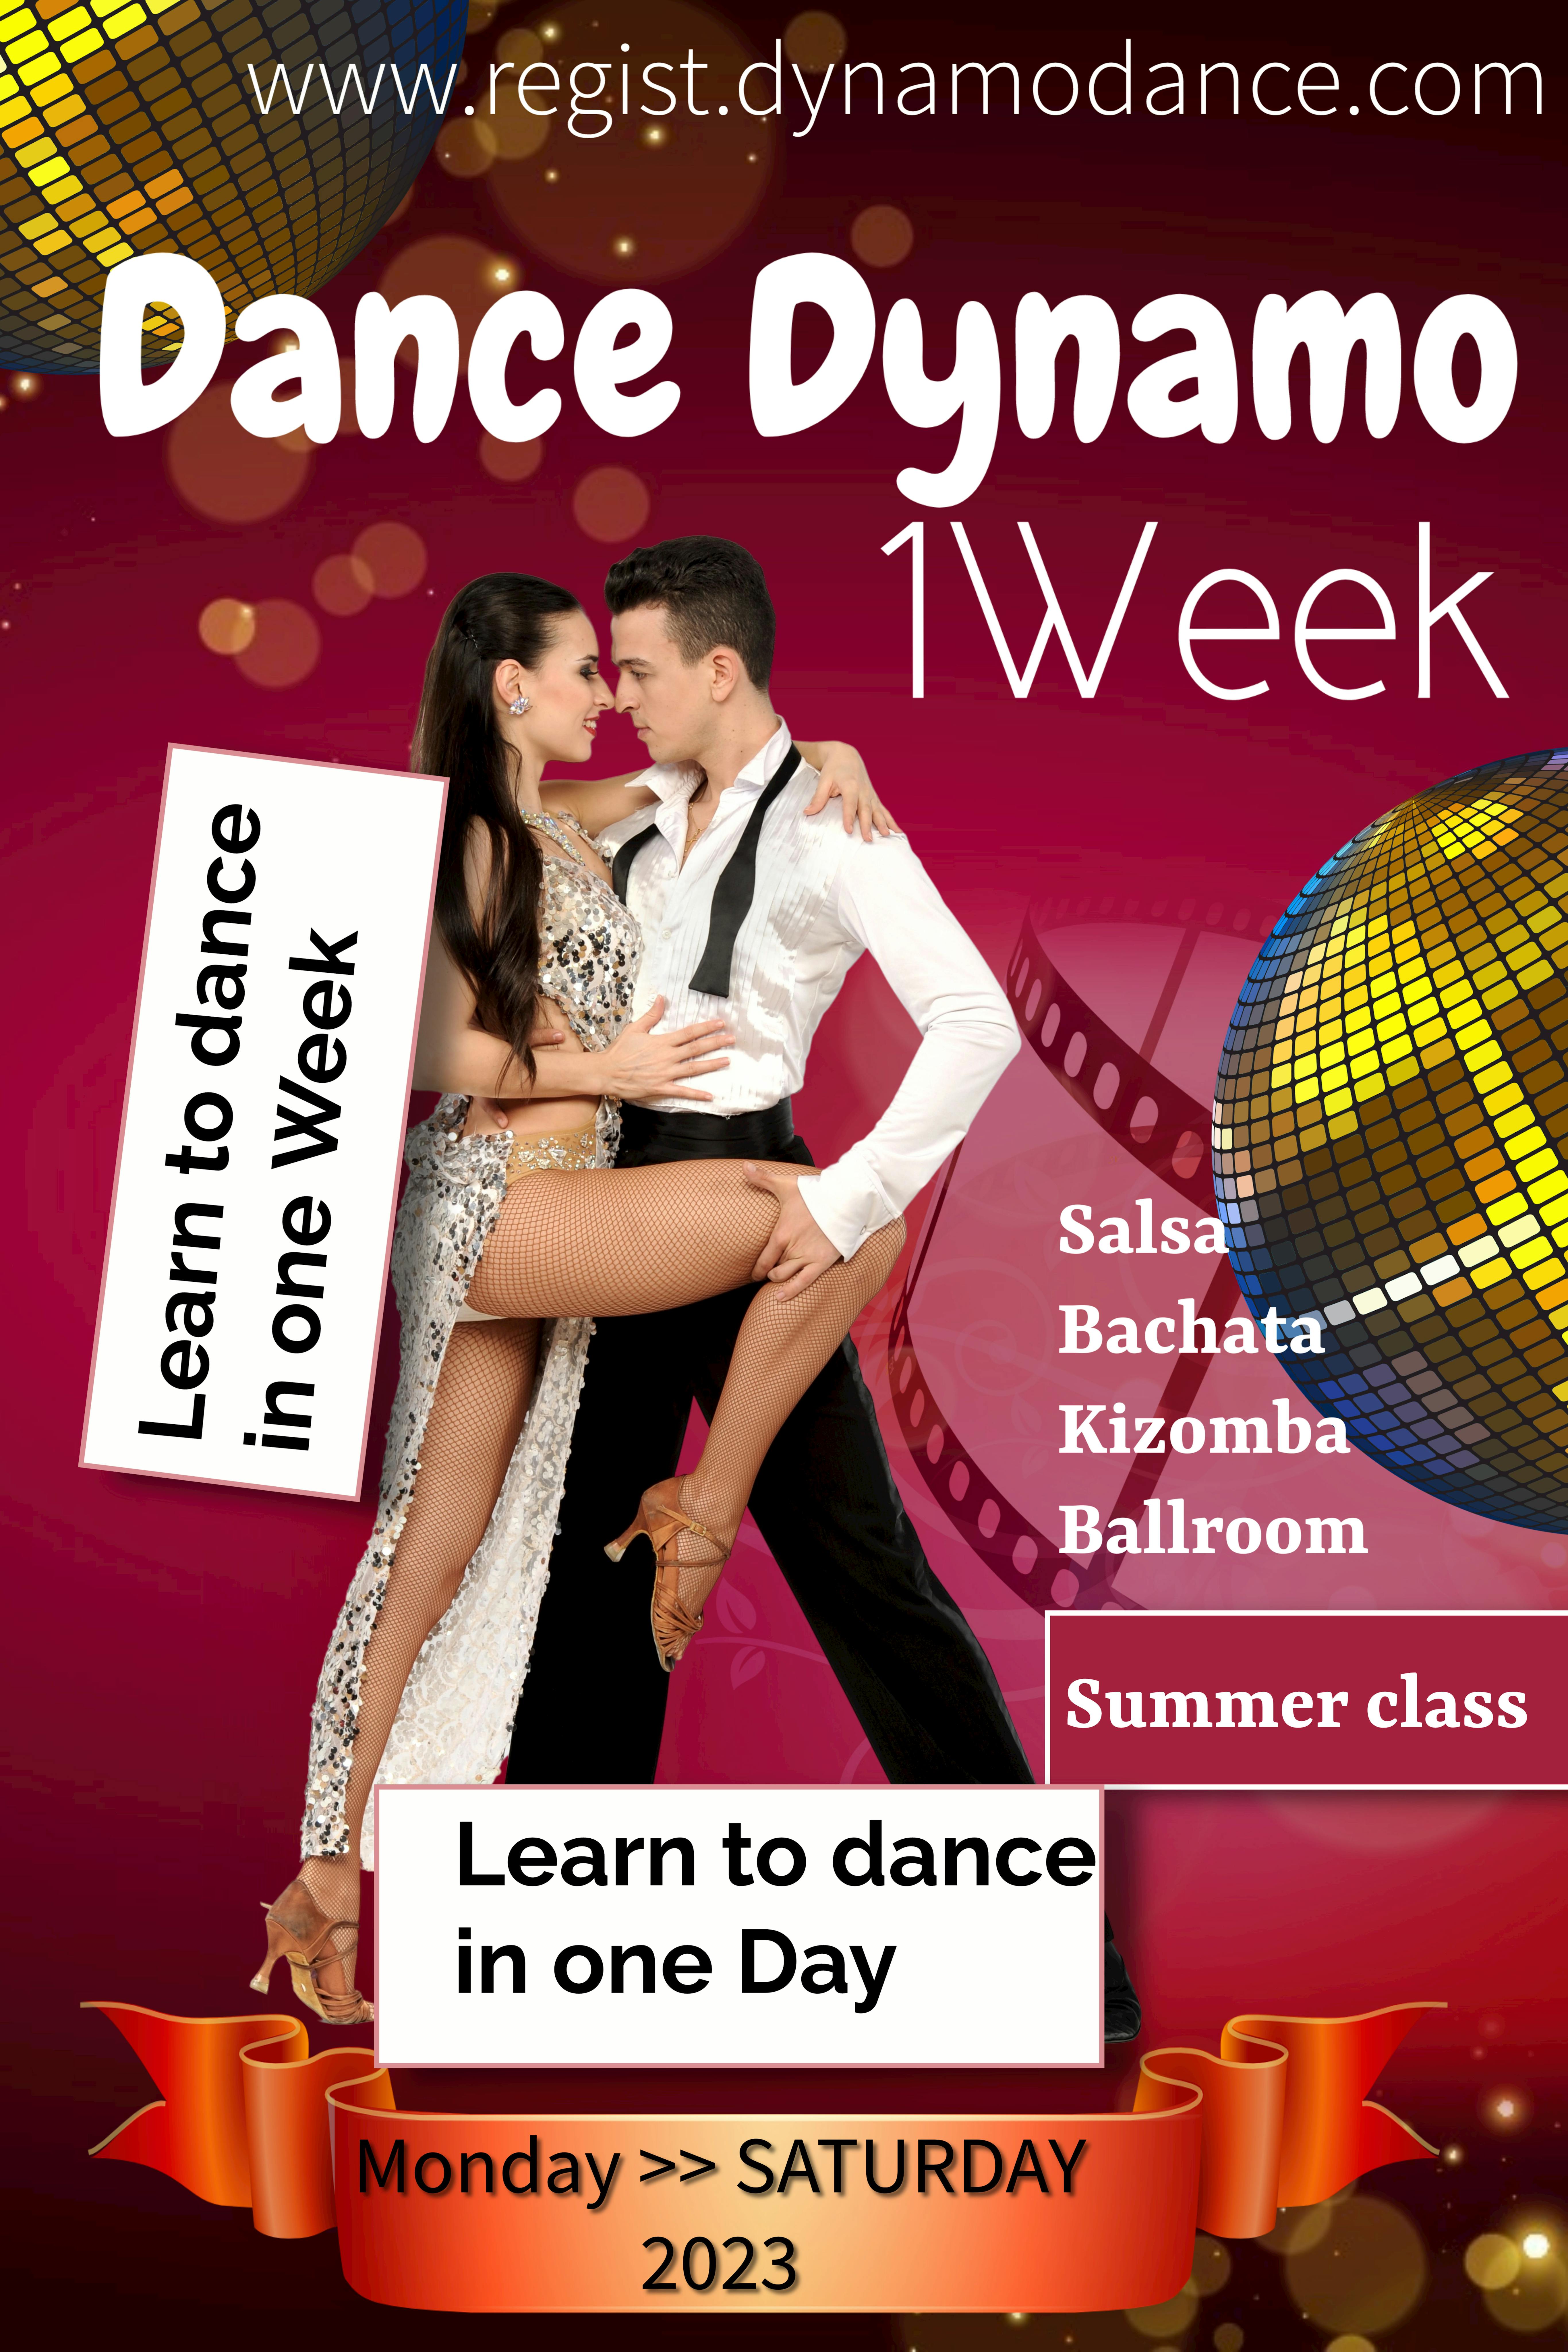 Dans Dynamo 1 week of 1 dag Salsa Bachata Kizomba Ballroom